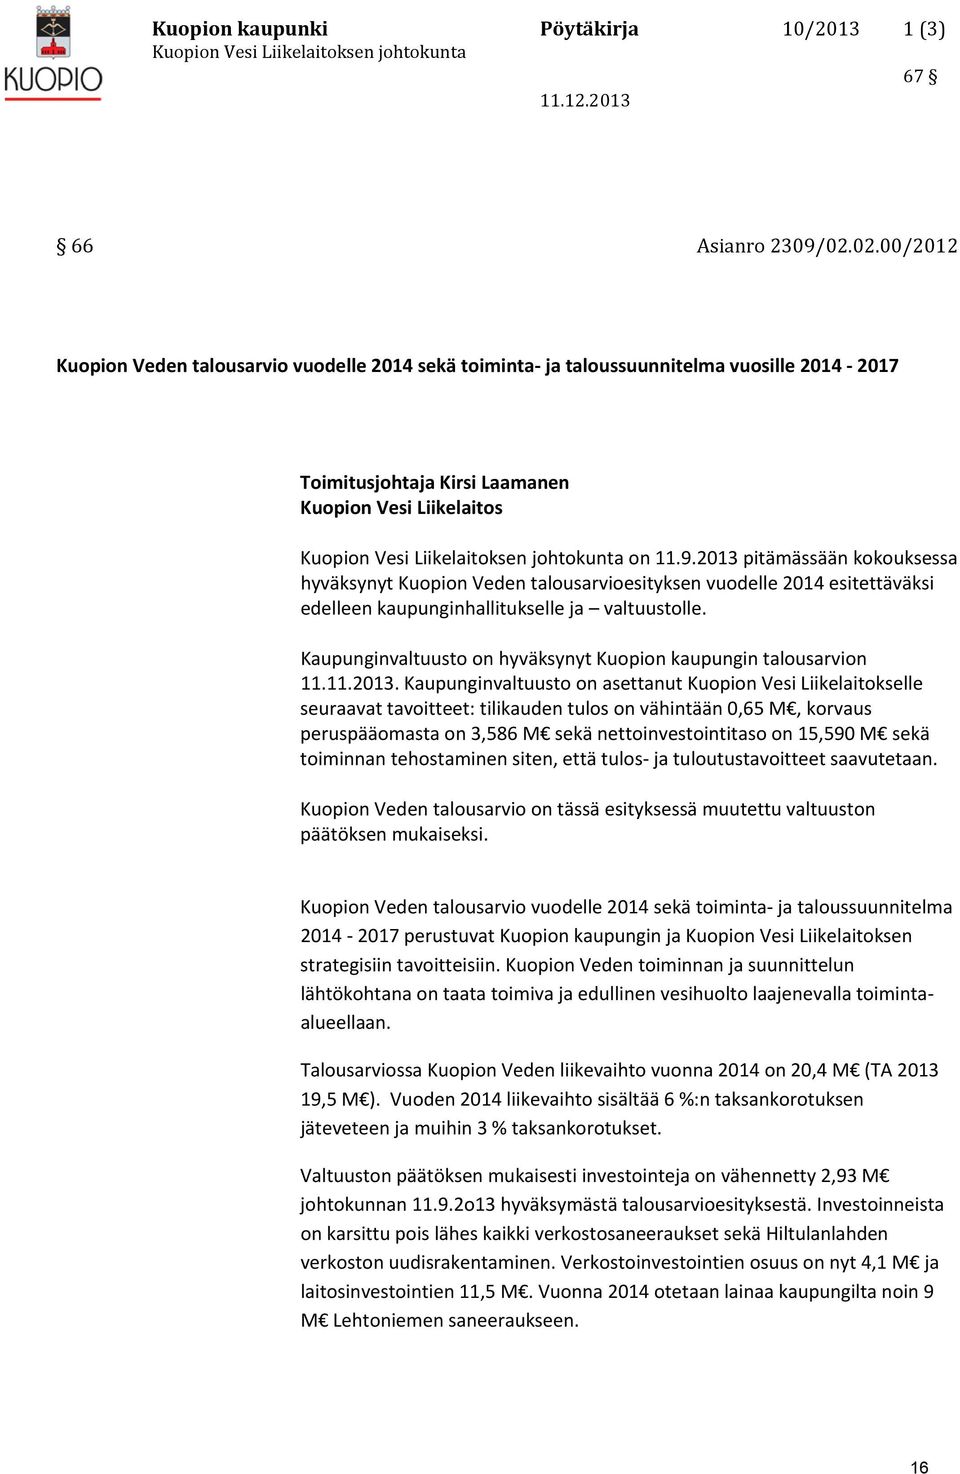 on 11.9.2013 pitämässään kokouksessa hyväksynyt Kuopion Veden talousarvioesityksen vuodelle 2014 esitettäväksi edelleen kaupunginhallitukselle ja valtuustolle.